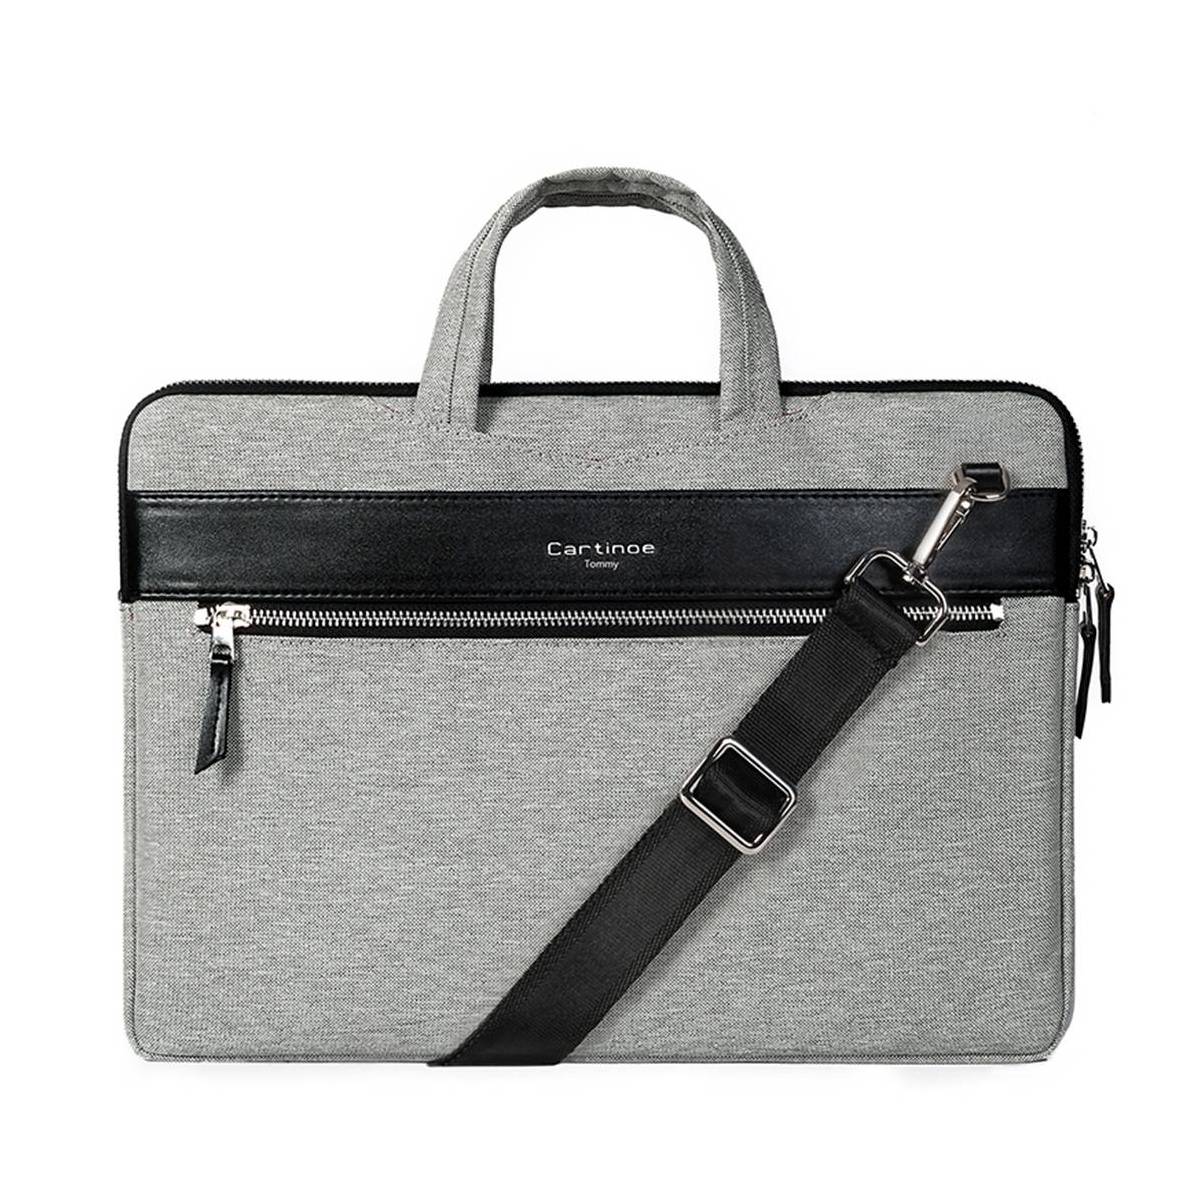 Skinnende reagere Afvise Cartinoe London Style 13" MacBook taske - grå - Gixmo.dk